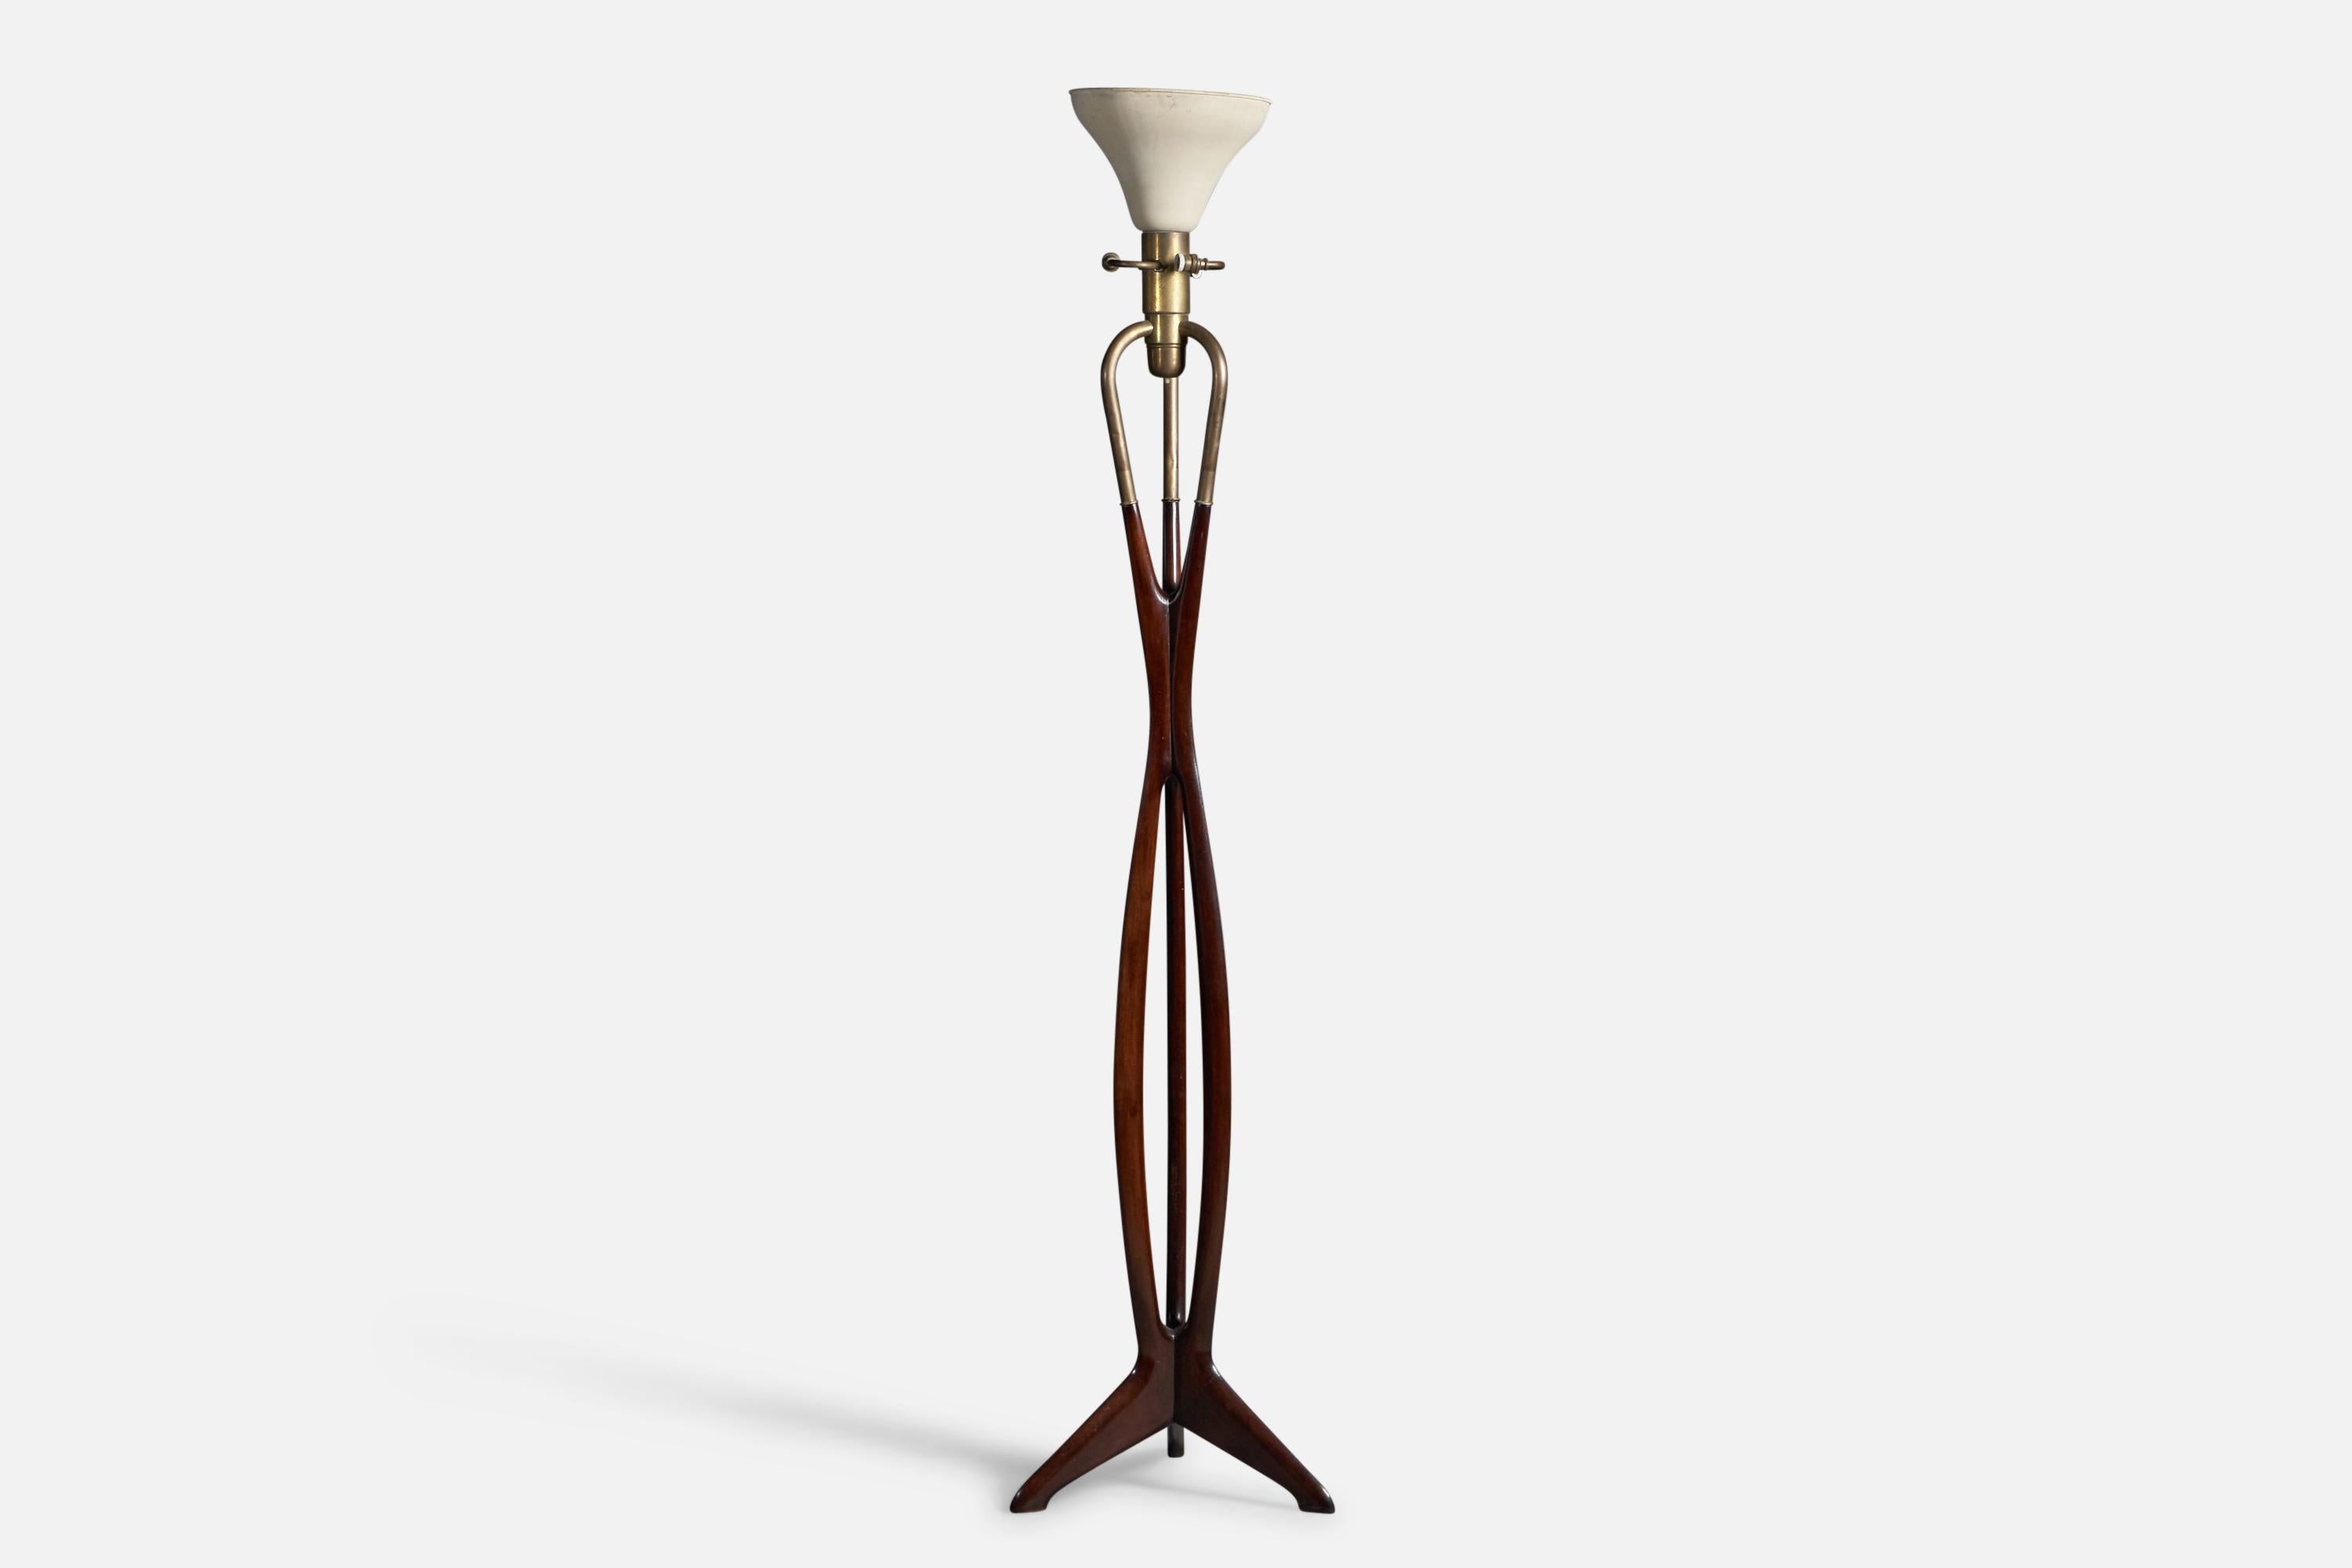 Stehlampe aus Nussbaum, Messing und weißem Stoff, entworfen und hergestellt von Cesare Lacca, Italien, 1950er Jahre

Abmessungen der Lampe (Zoll): 68,6